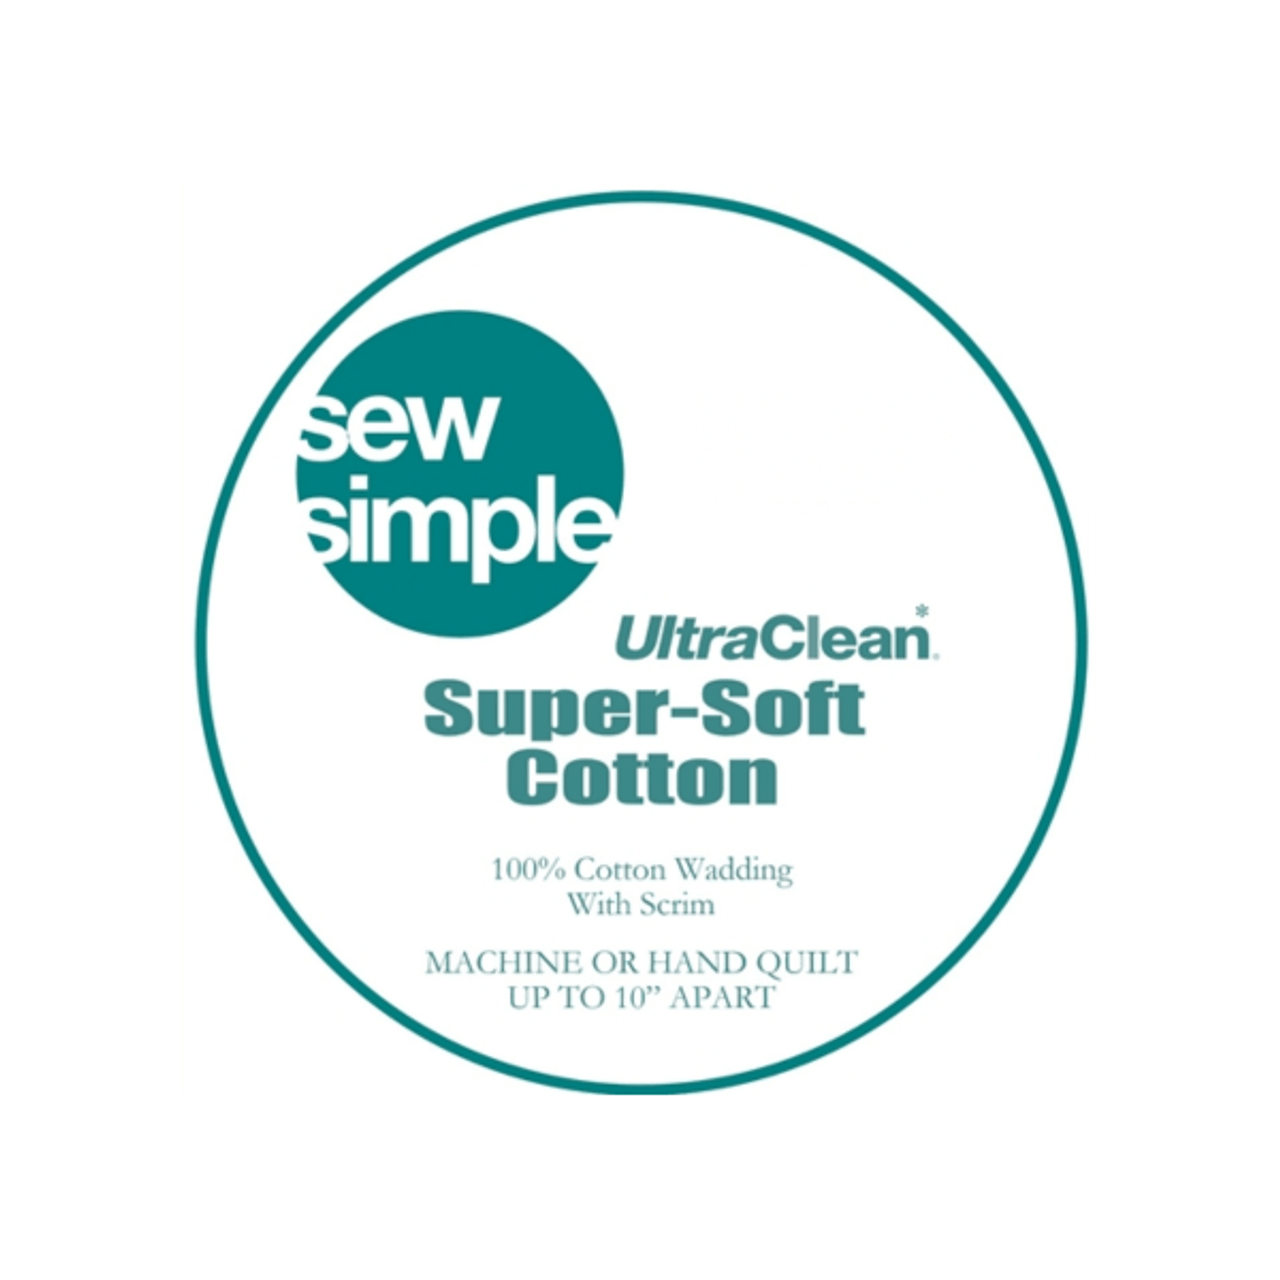 Sew Simple Super-Soft 100% Cotton / Natural Cotton remnants